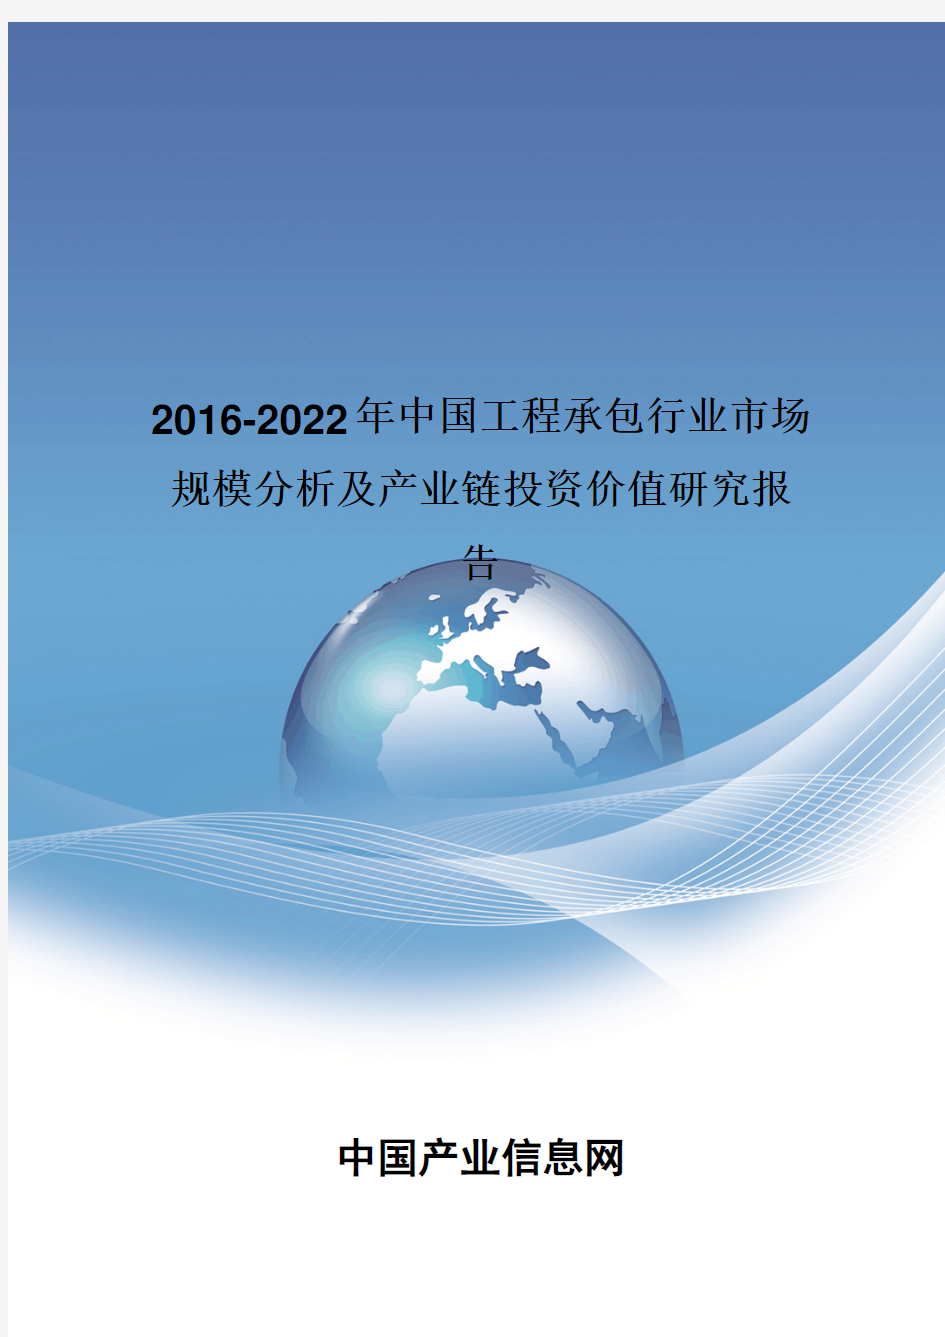 2016-2022年中国工程承包行业市场规模分析报告